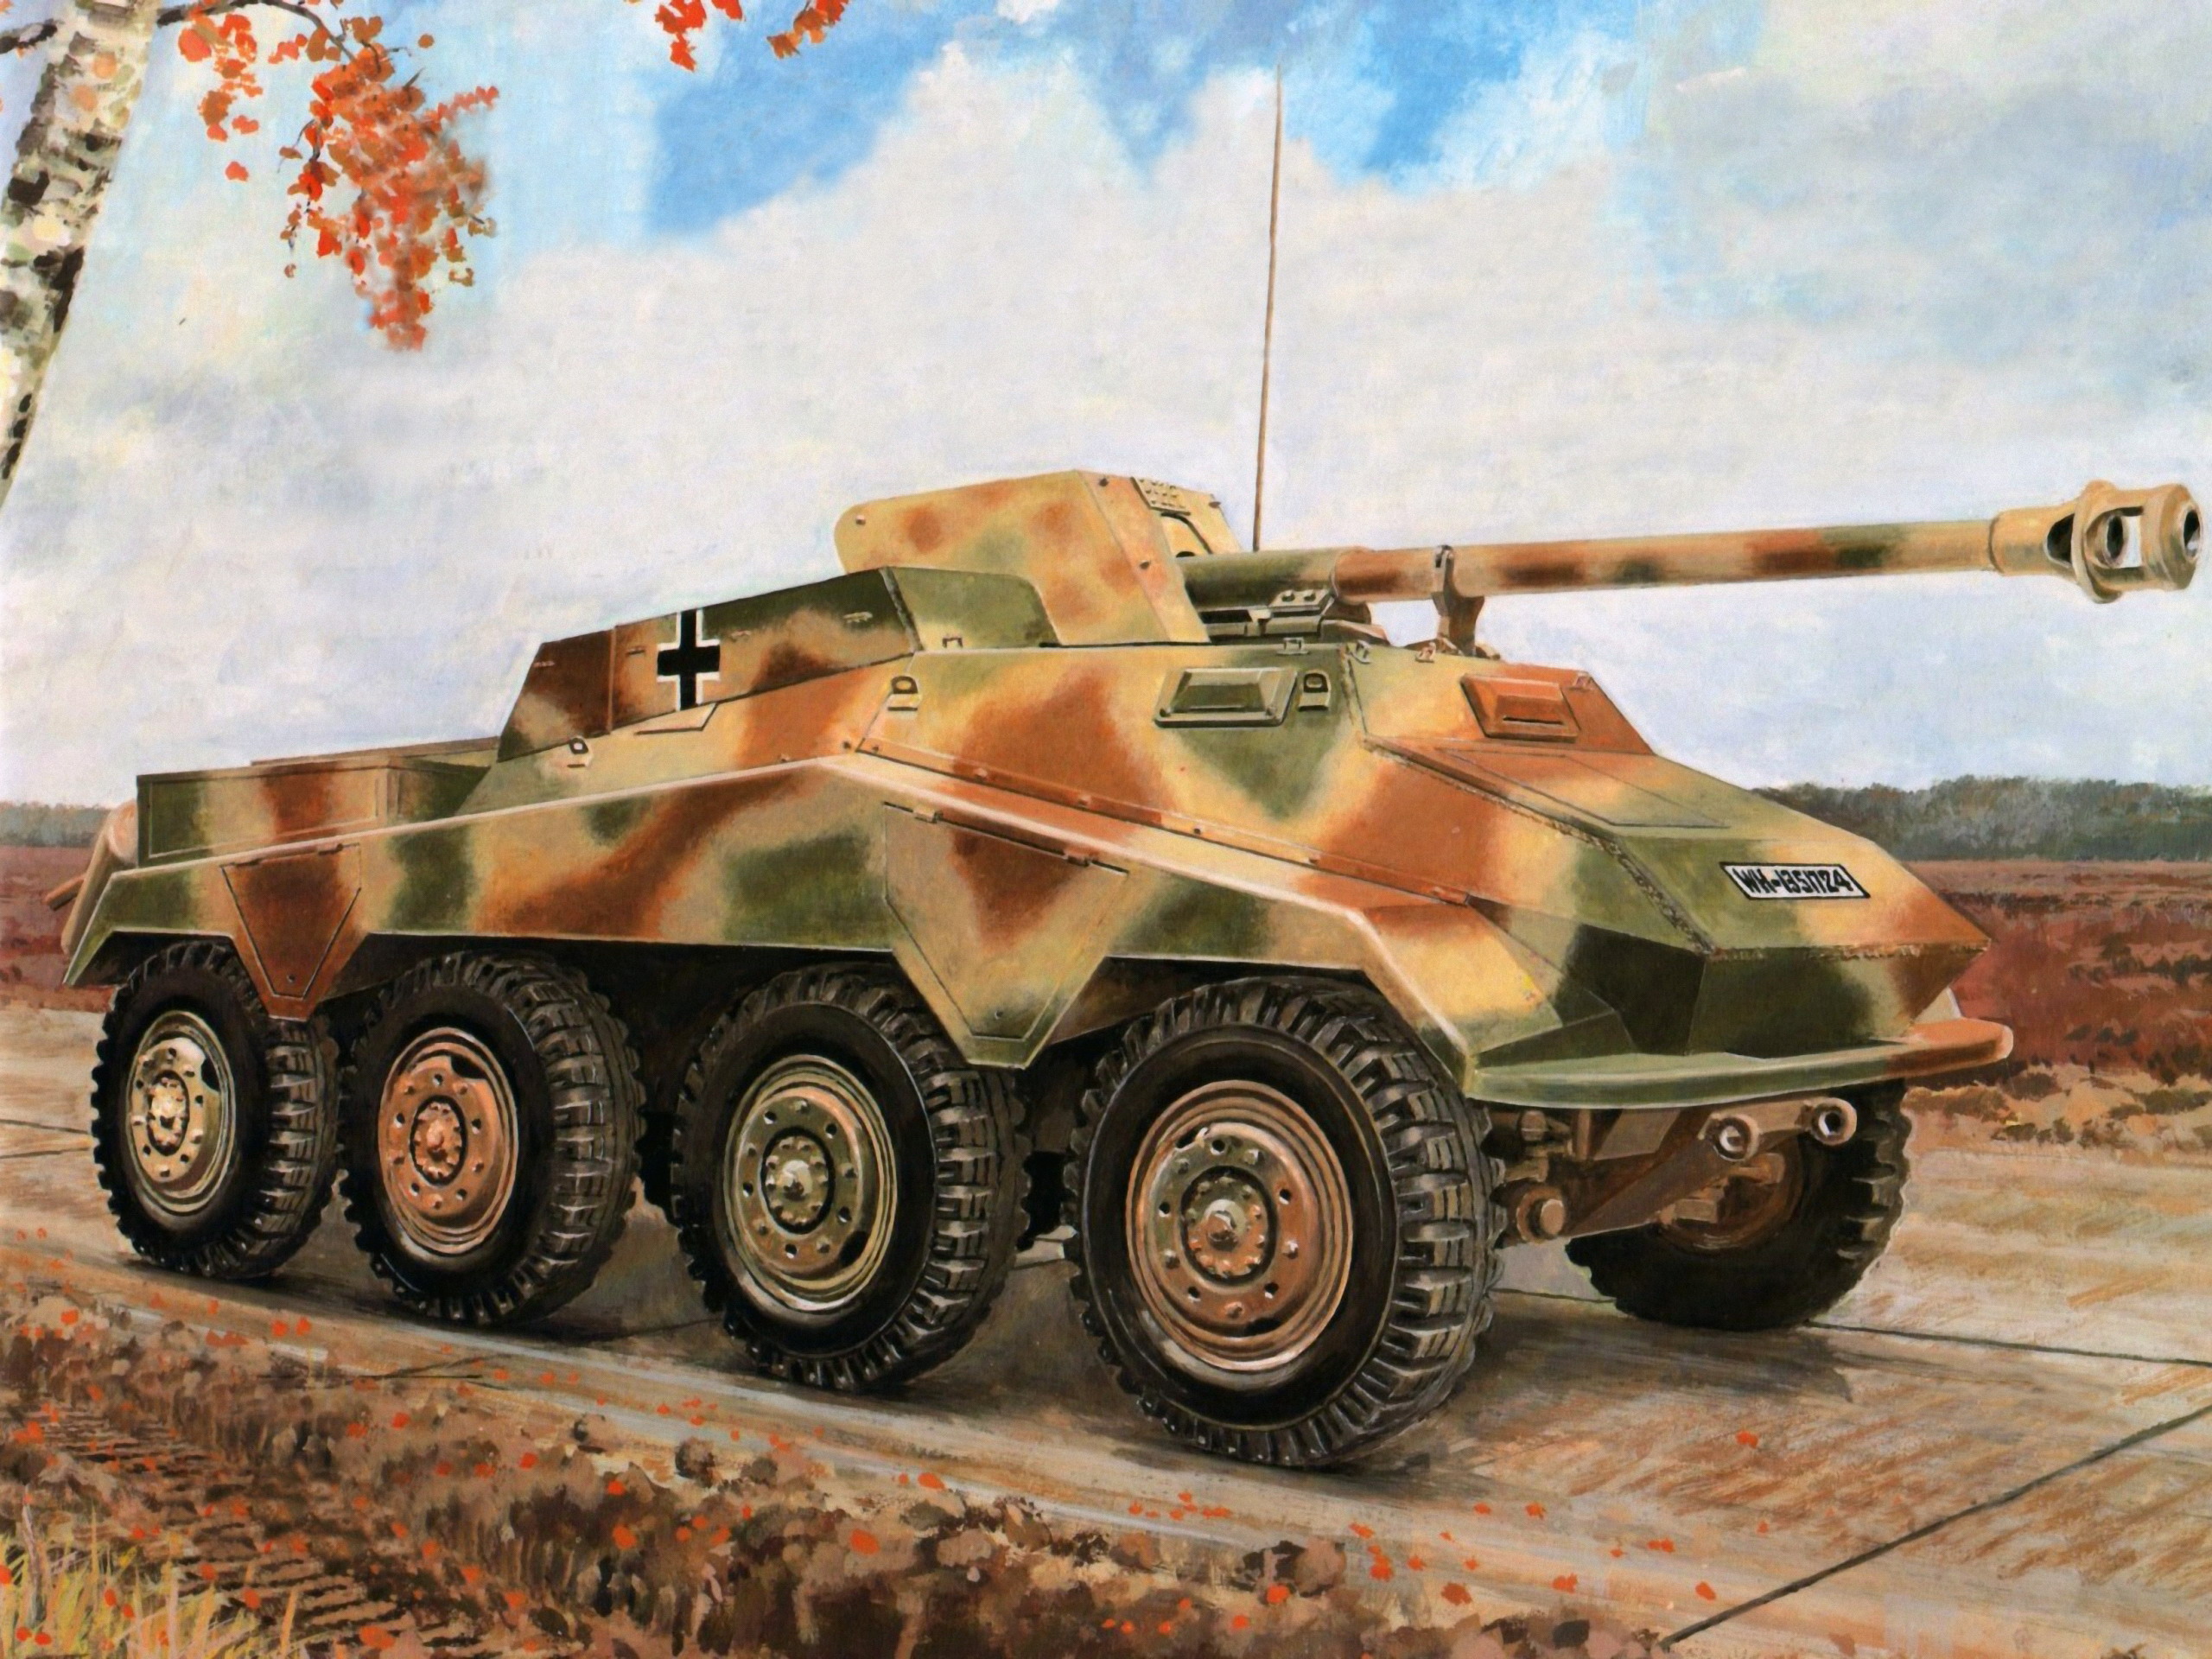 2560x1920 Desenhado VBTP Sd.Kfz. 234/4 militar, veículo blindado de transporte de pessoal Exército